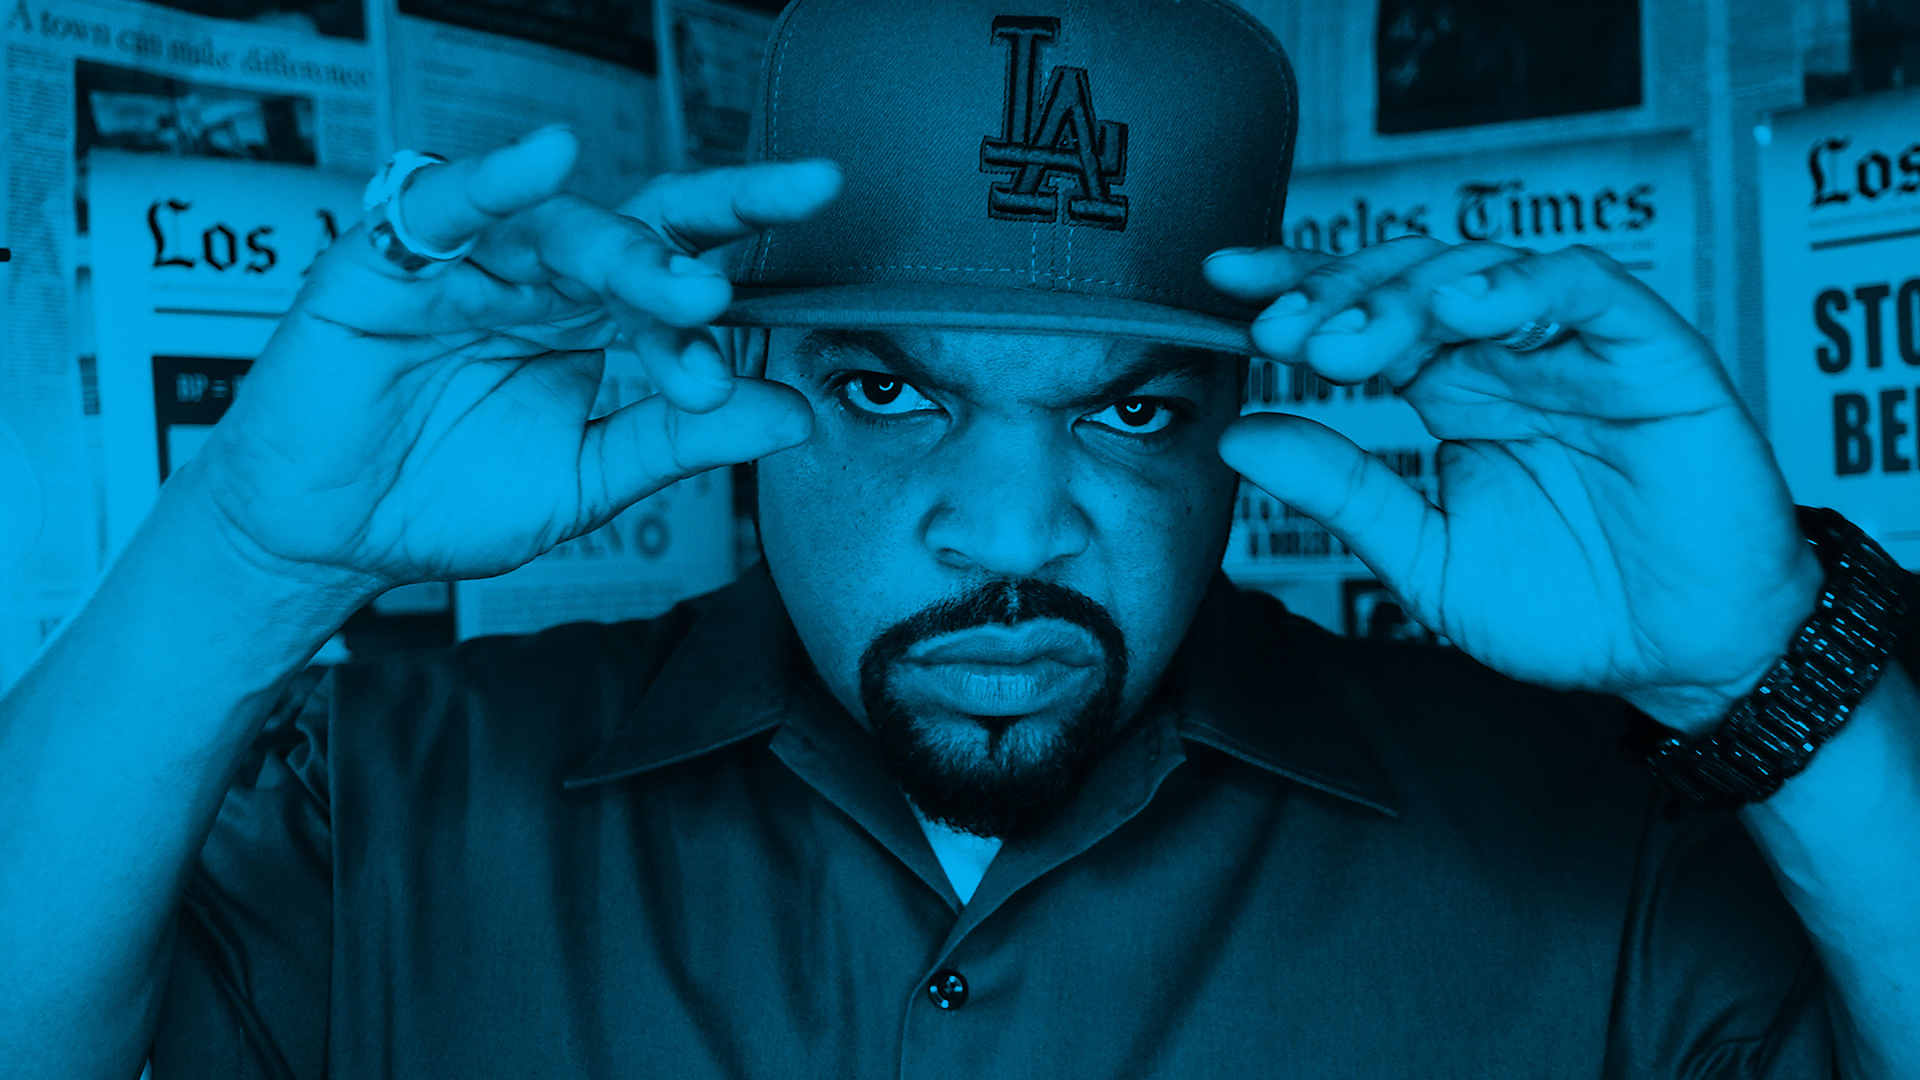 Do Ya Thang av Ice Cube